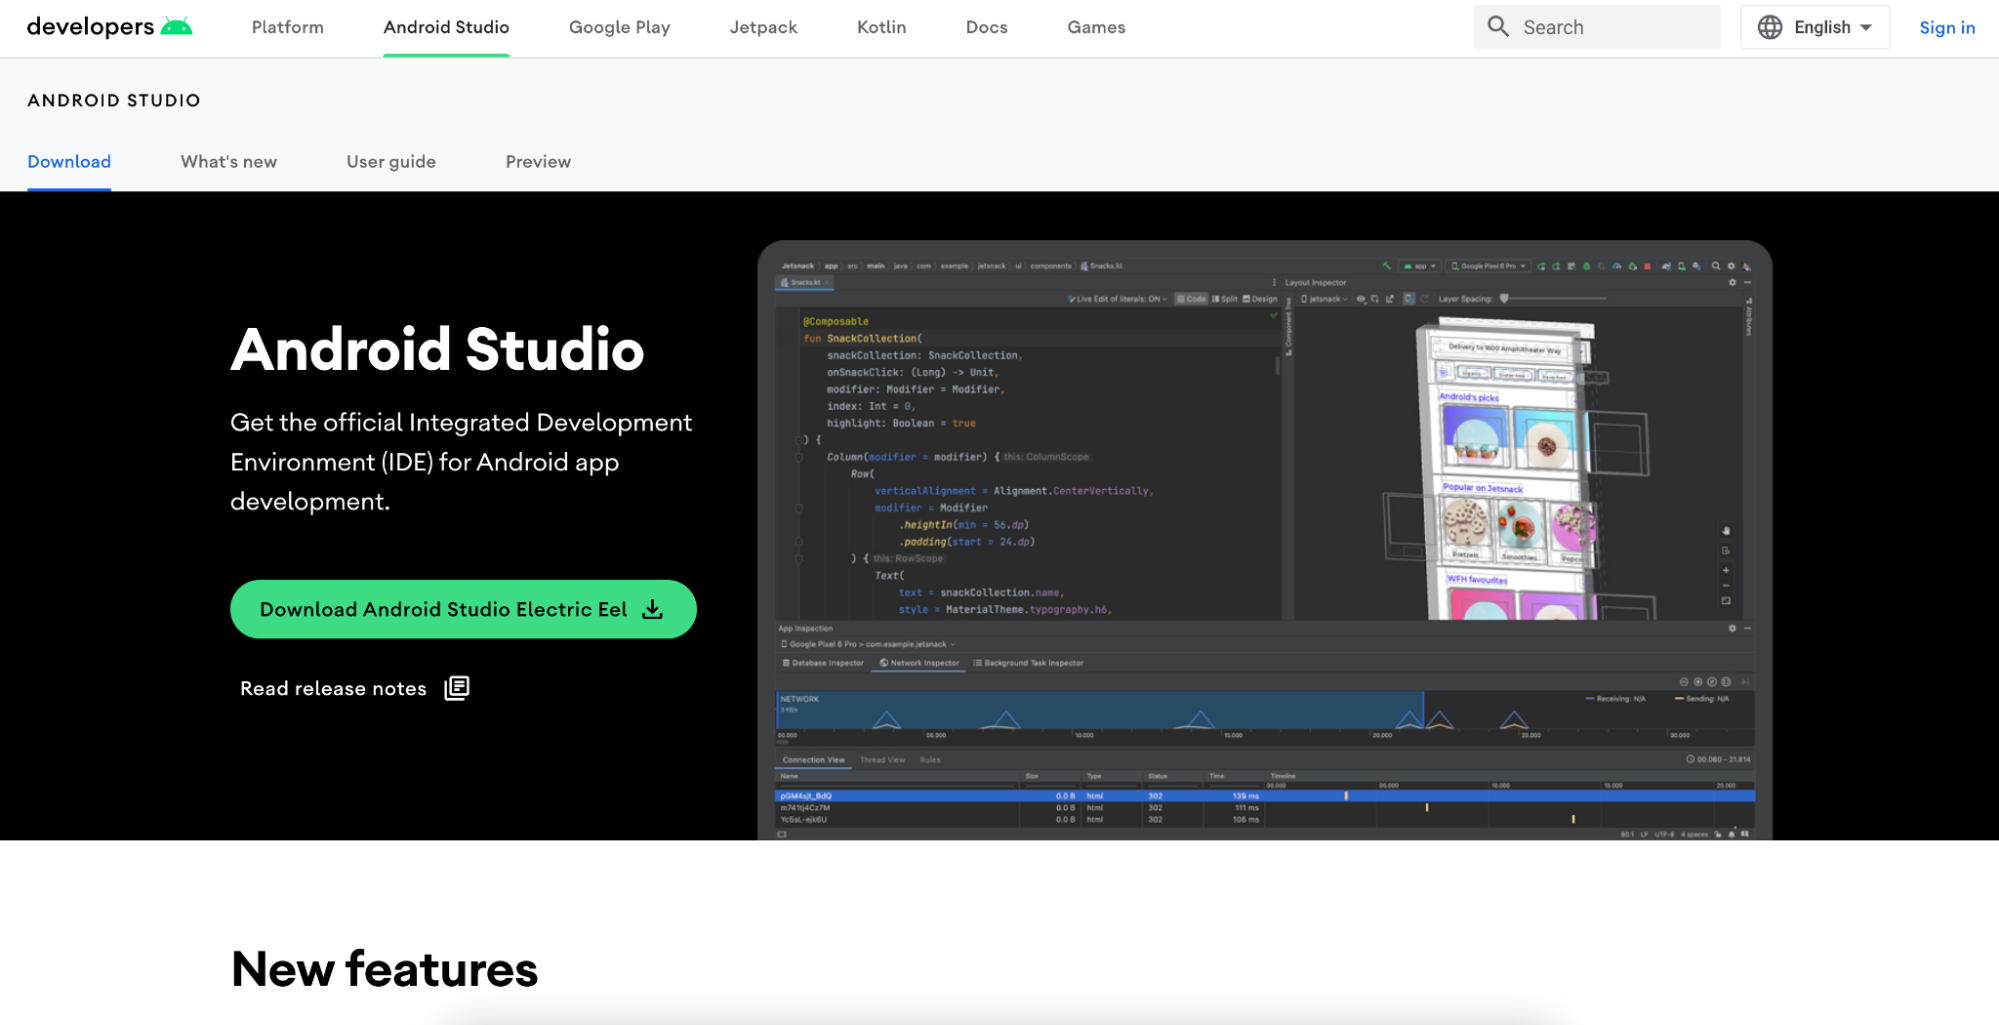 Capture d’écran présentant la page de téléchargement d’Android Studio. On y voit un aperçu de l’IDE, accompagné d’un bouton “Download Android Studio Electric Eel”.